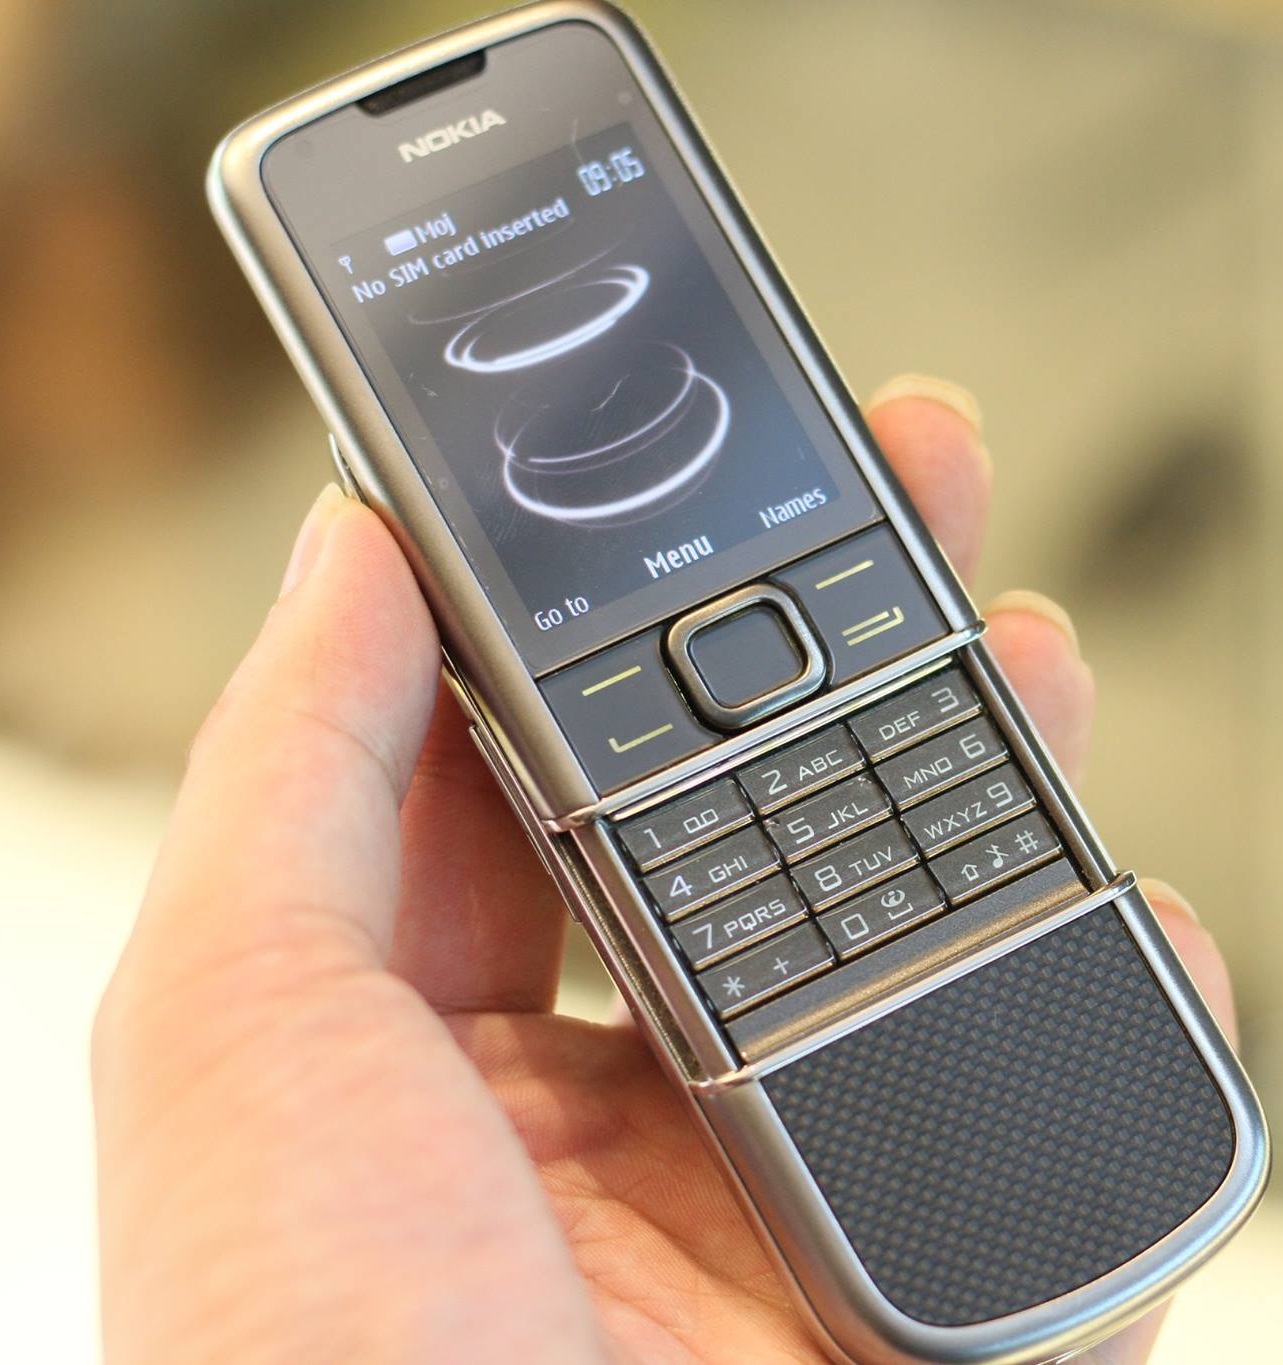 Bạn đang tìm kiếm một chiếc Nokia 8800 Carbon Arte nguyên bản và chính hãng? Không cần phải tìm kiếm xa, chúng tôi cung cấp sản phẩm này để đáp ứng nhu cầu của bạn. Thiết kế đẳng cấp cùng cấu hình mạnh mẽ, sẽ đem đến cho bạn trải nghiệm tuyệt vời và hiệu quả.